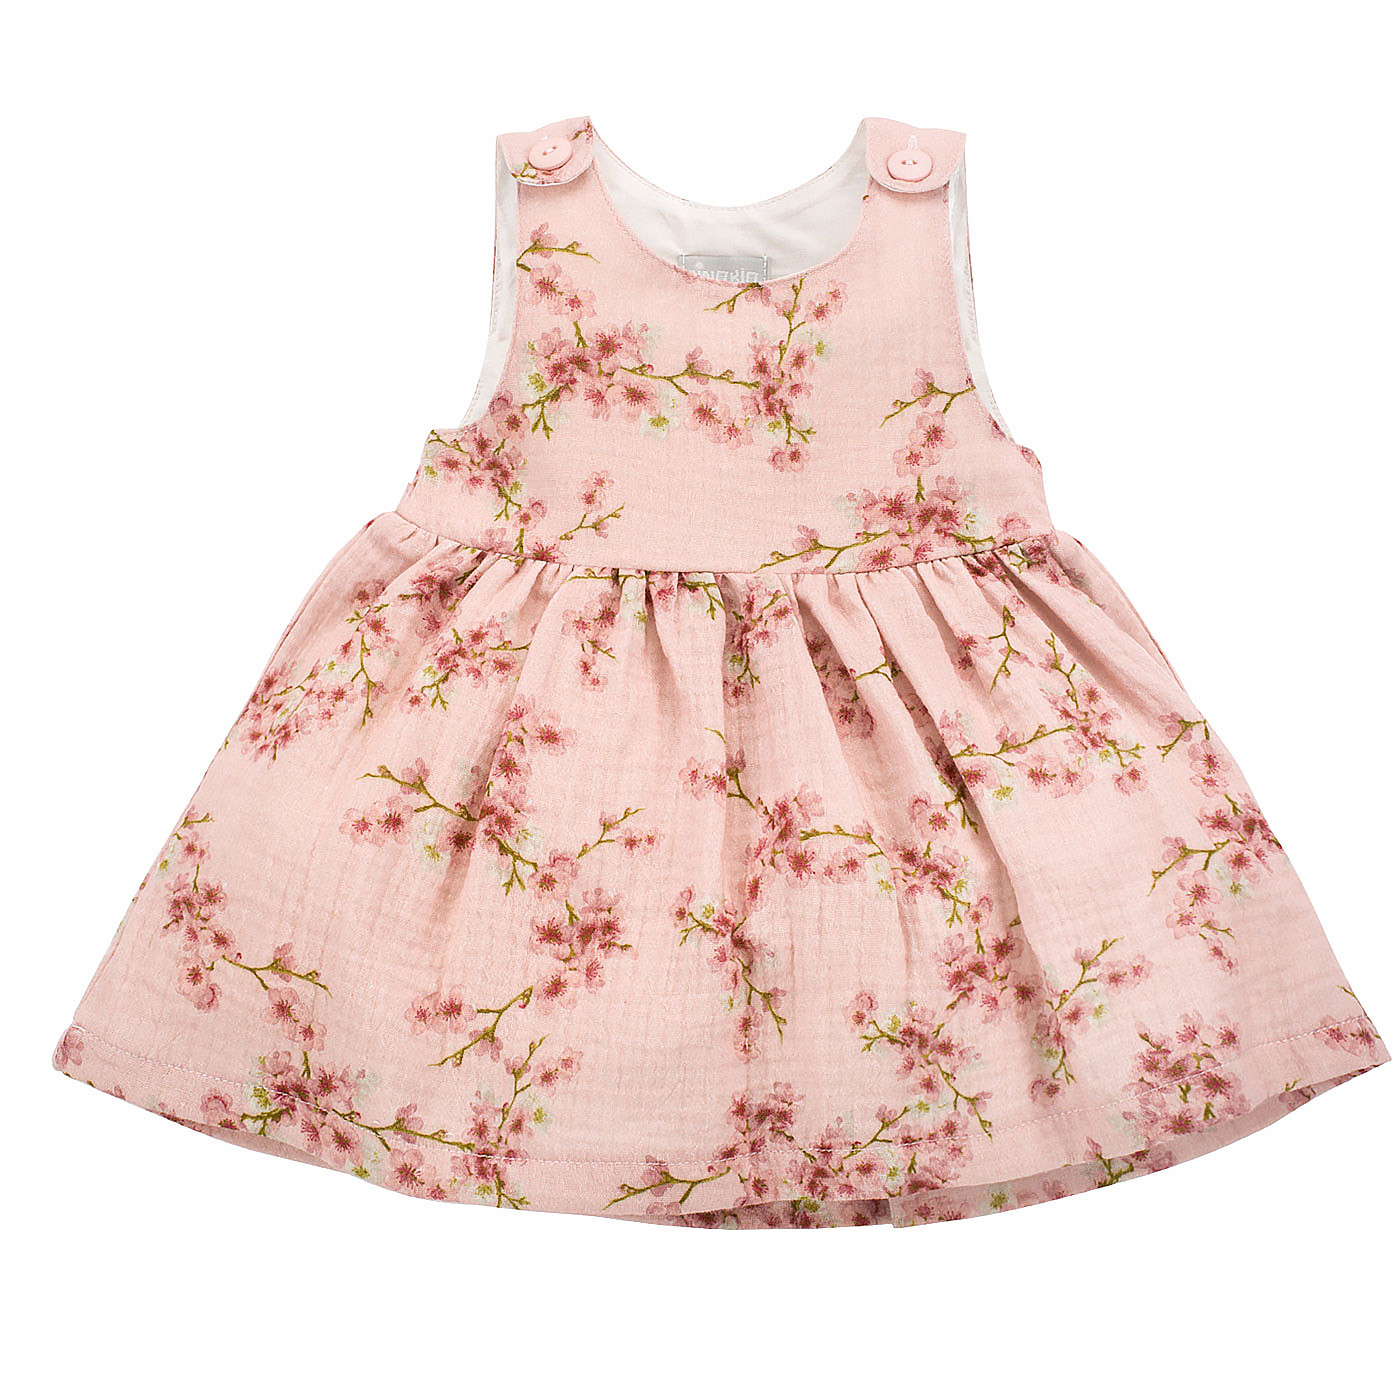 Pinokio Letní náladové šaty Pink Flowers 92